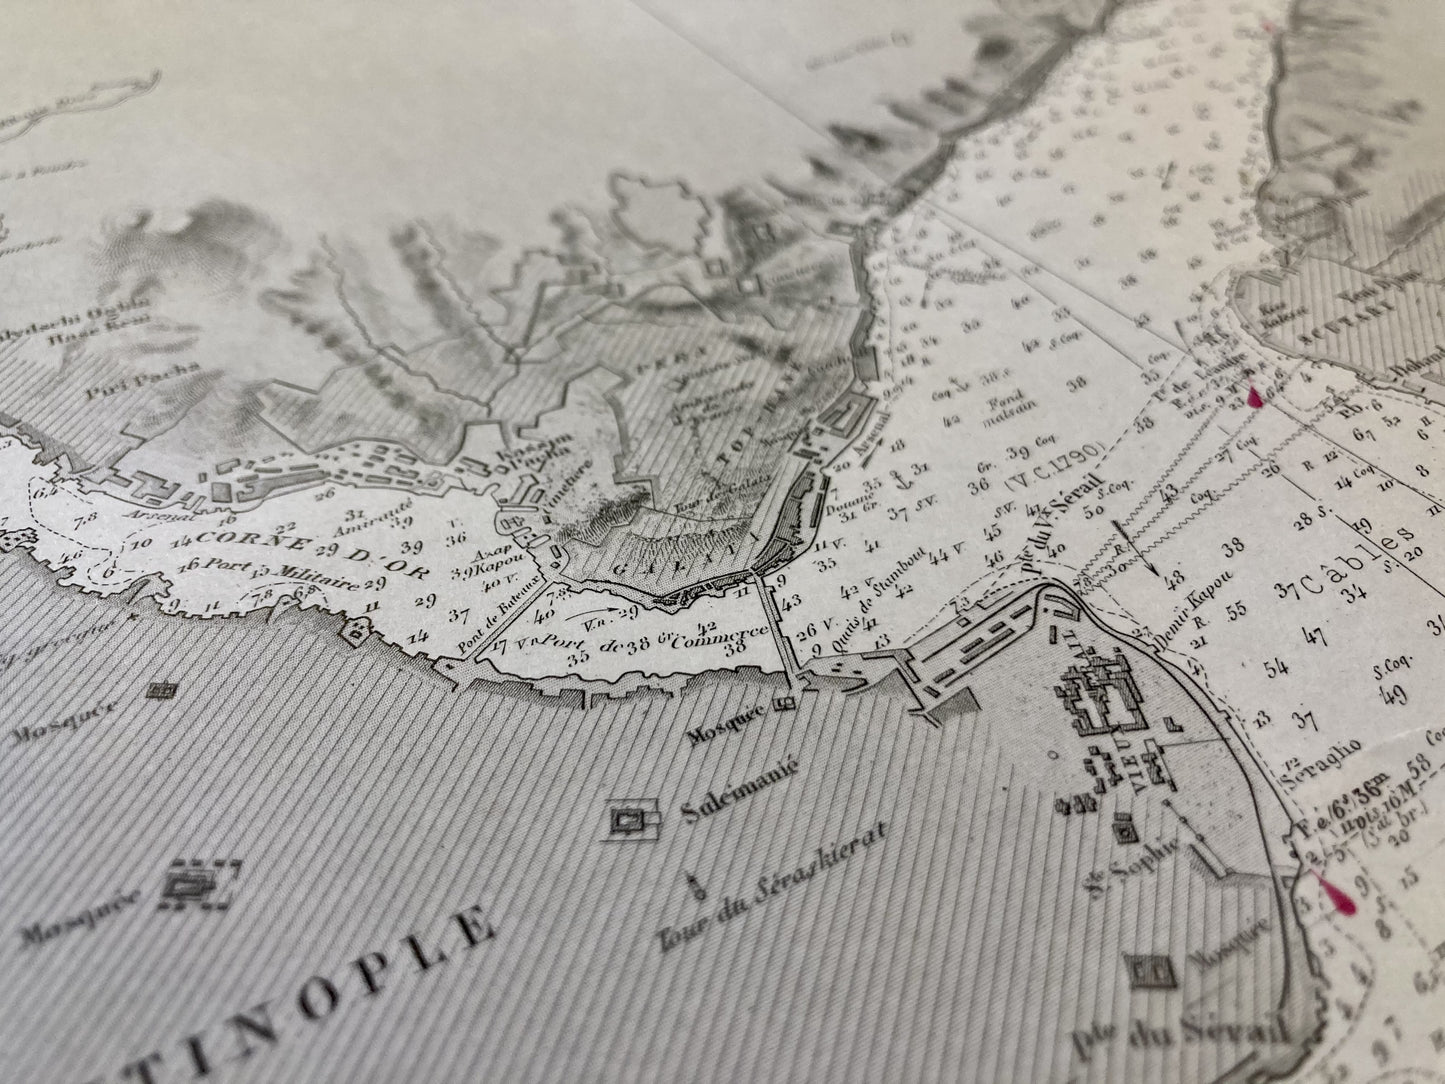 Détail de la carte Marine ancienne du Bosphore